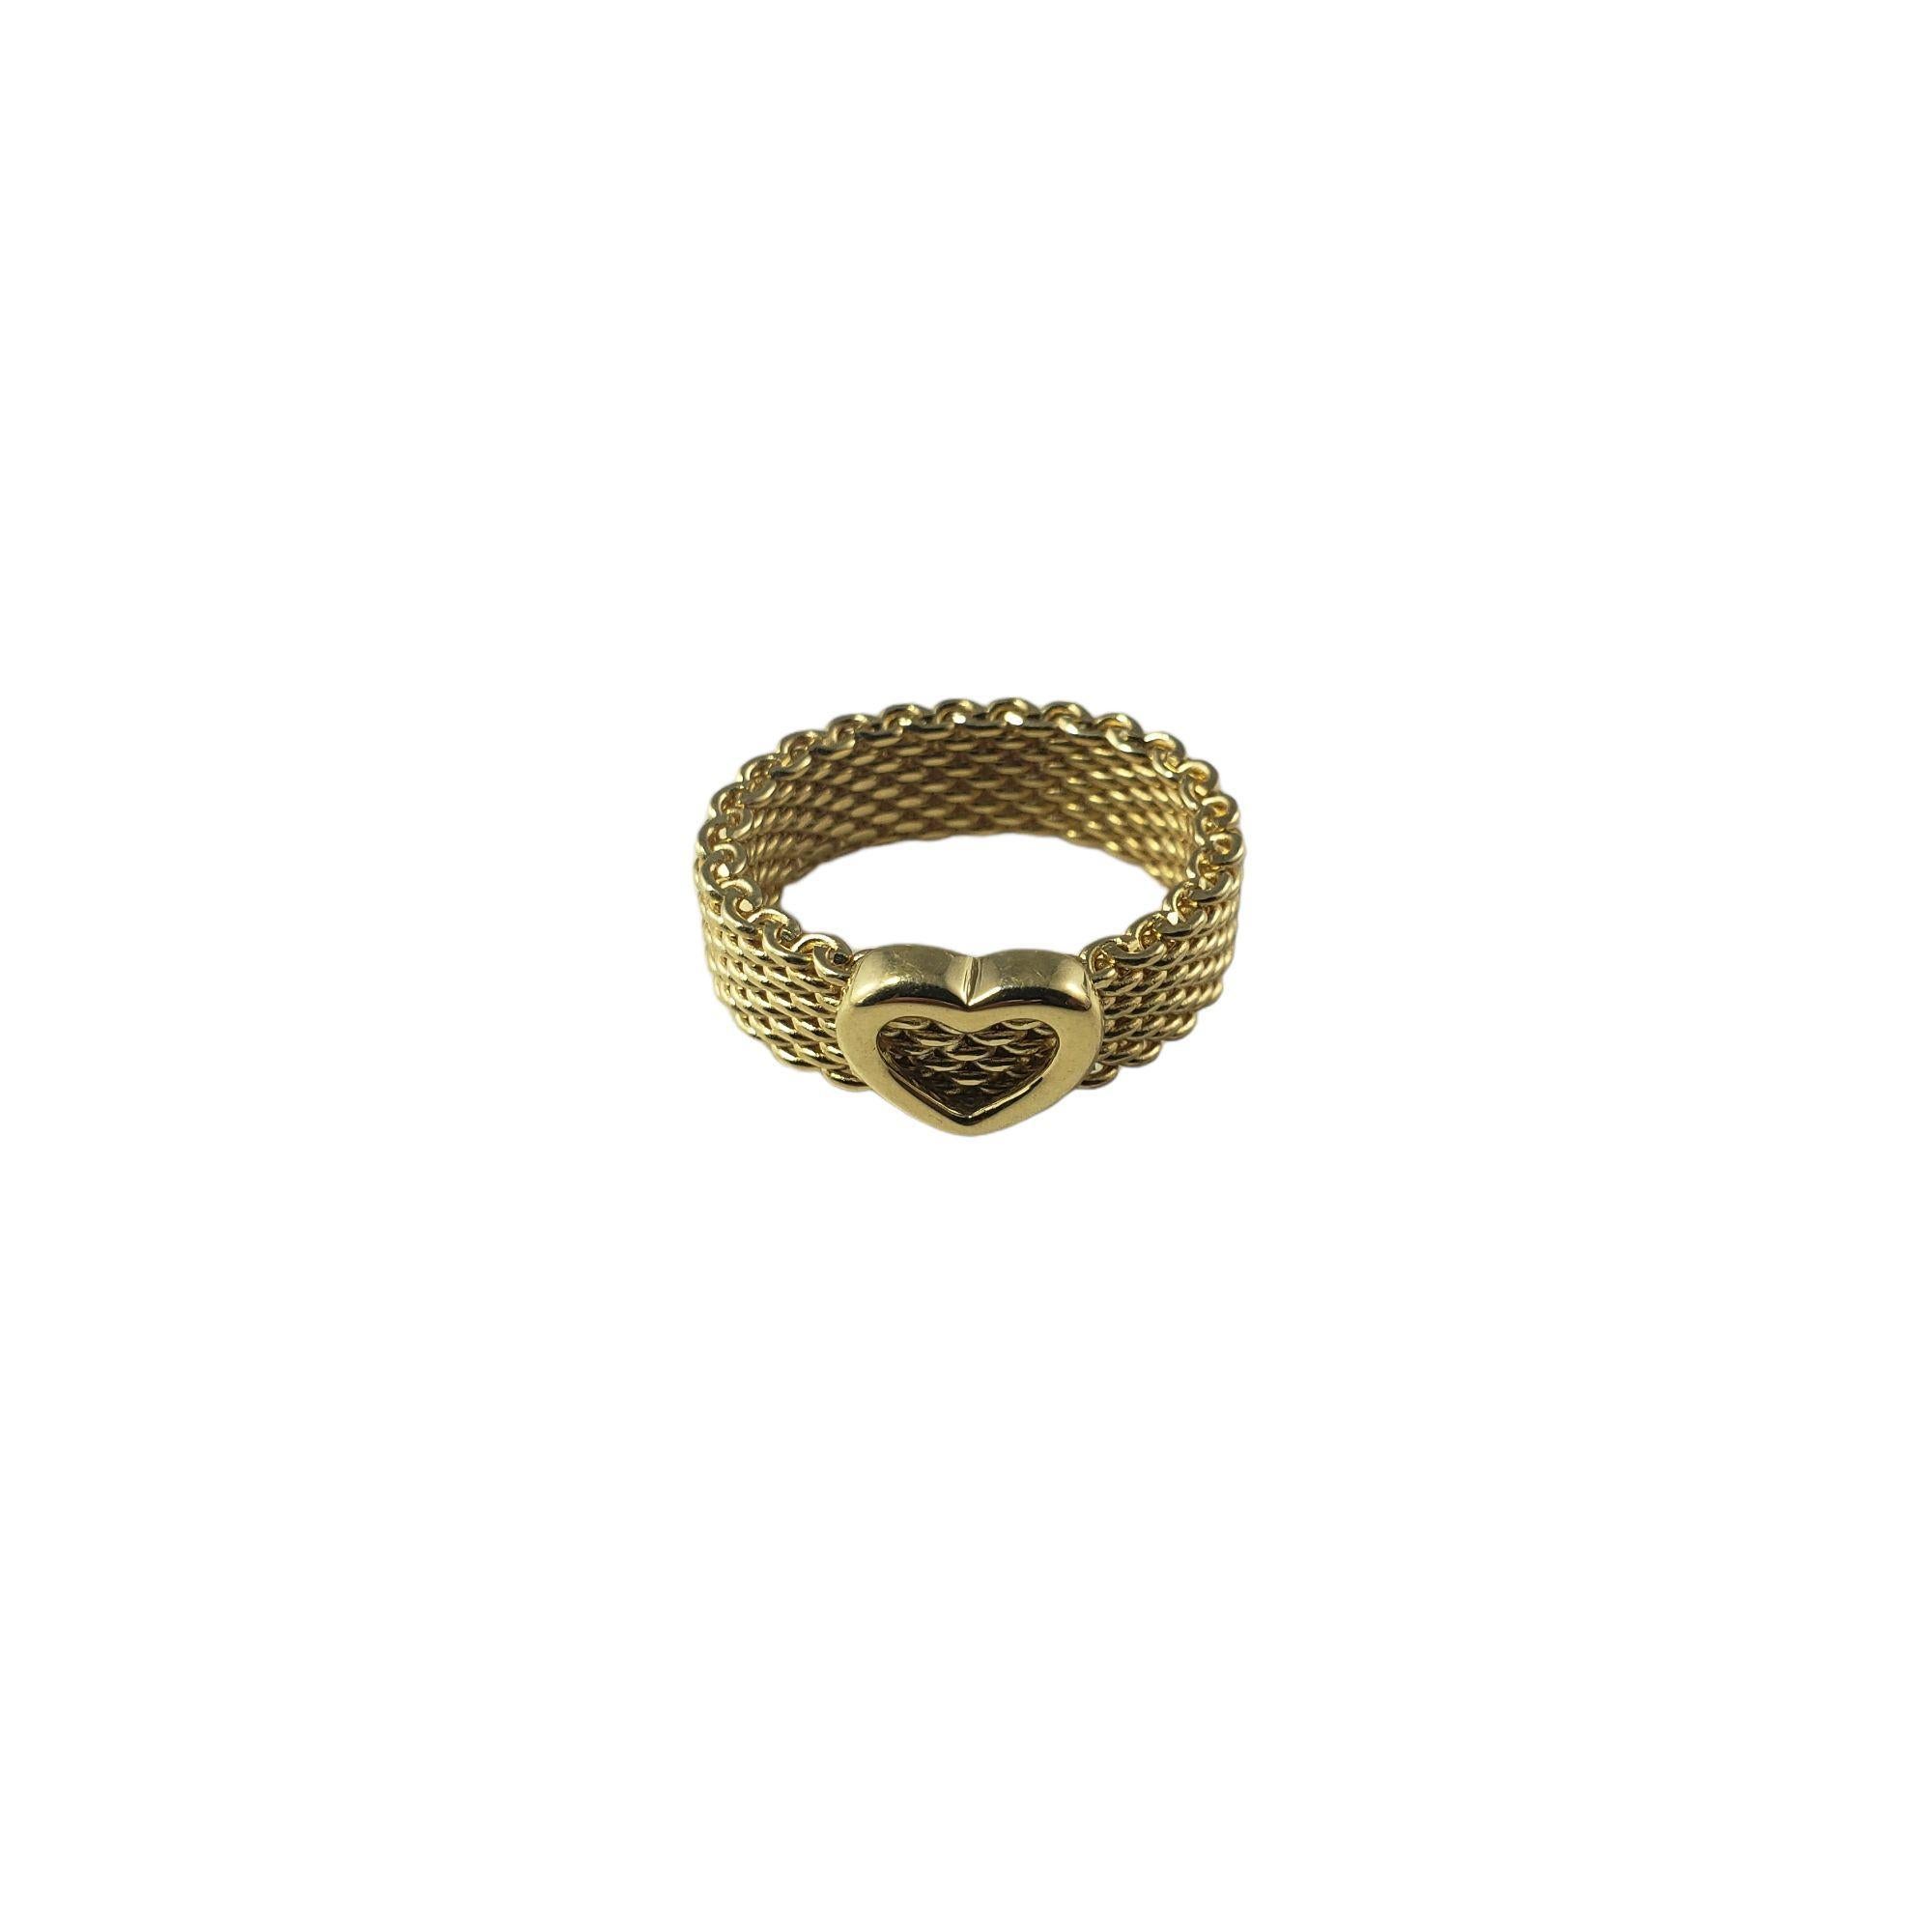 Tiffany & Co. Or jaune 18 carats Somerset Heart Mesh Ring Taille 5

Cette magnifique bague à cœur en maille de Tiffany & Co. est réalisée en or jaune 18 carats aux détails méticuleux. 

Largeur : 6 mm.

Taille de l'anneau : 5

Poids : 7,0 gr / 4,5